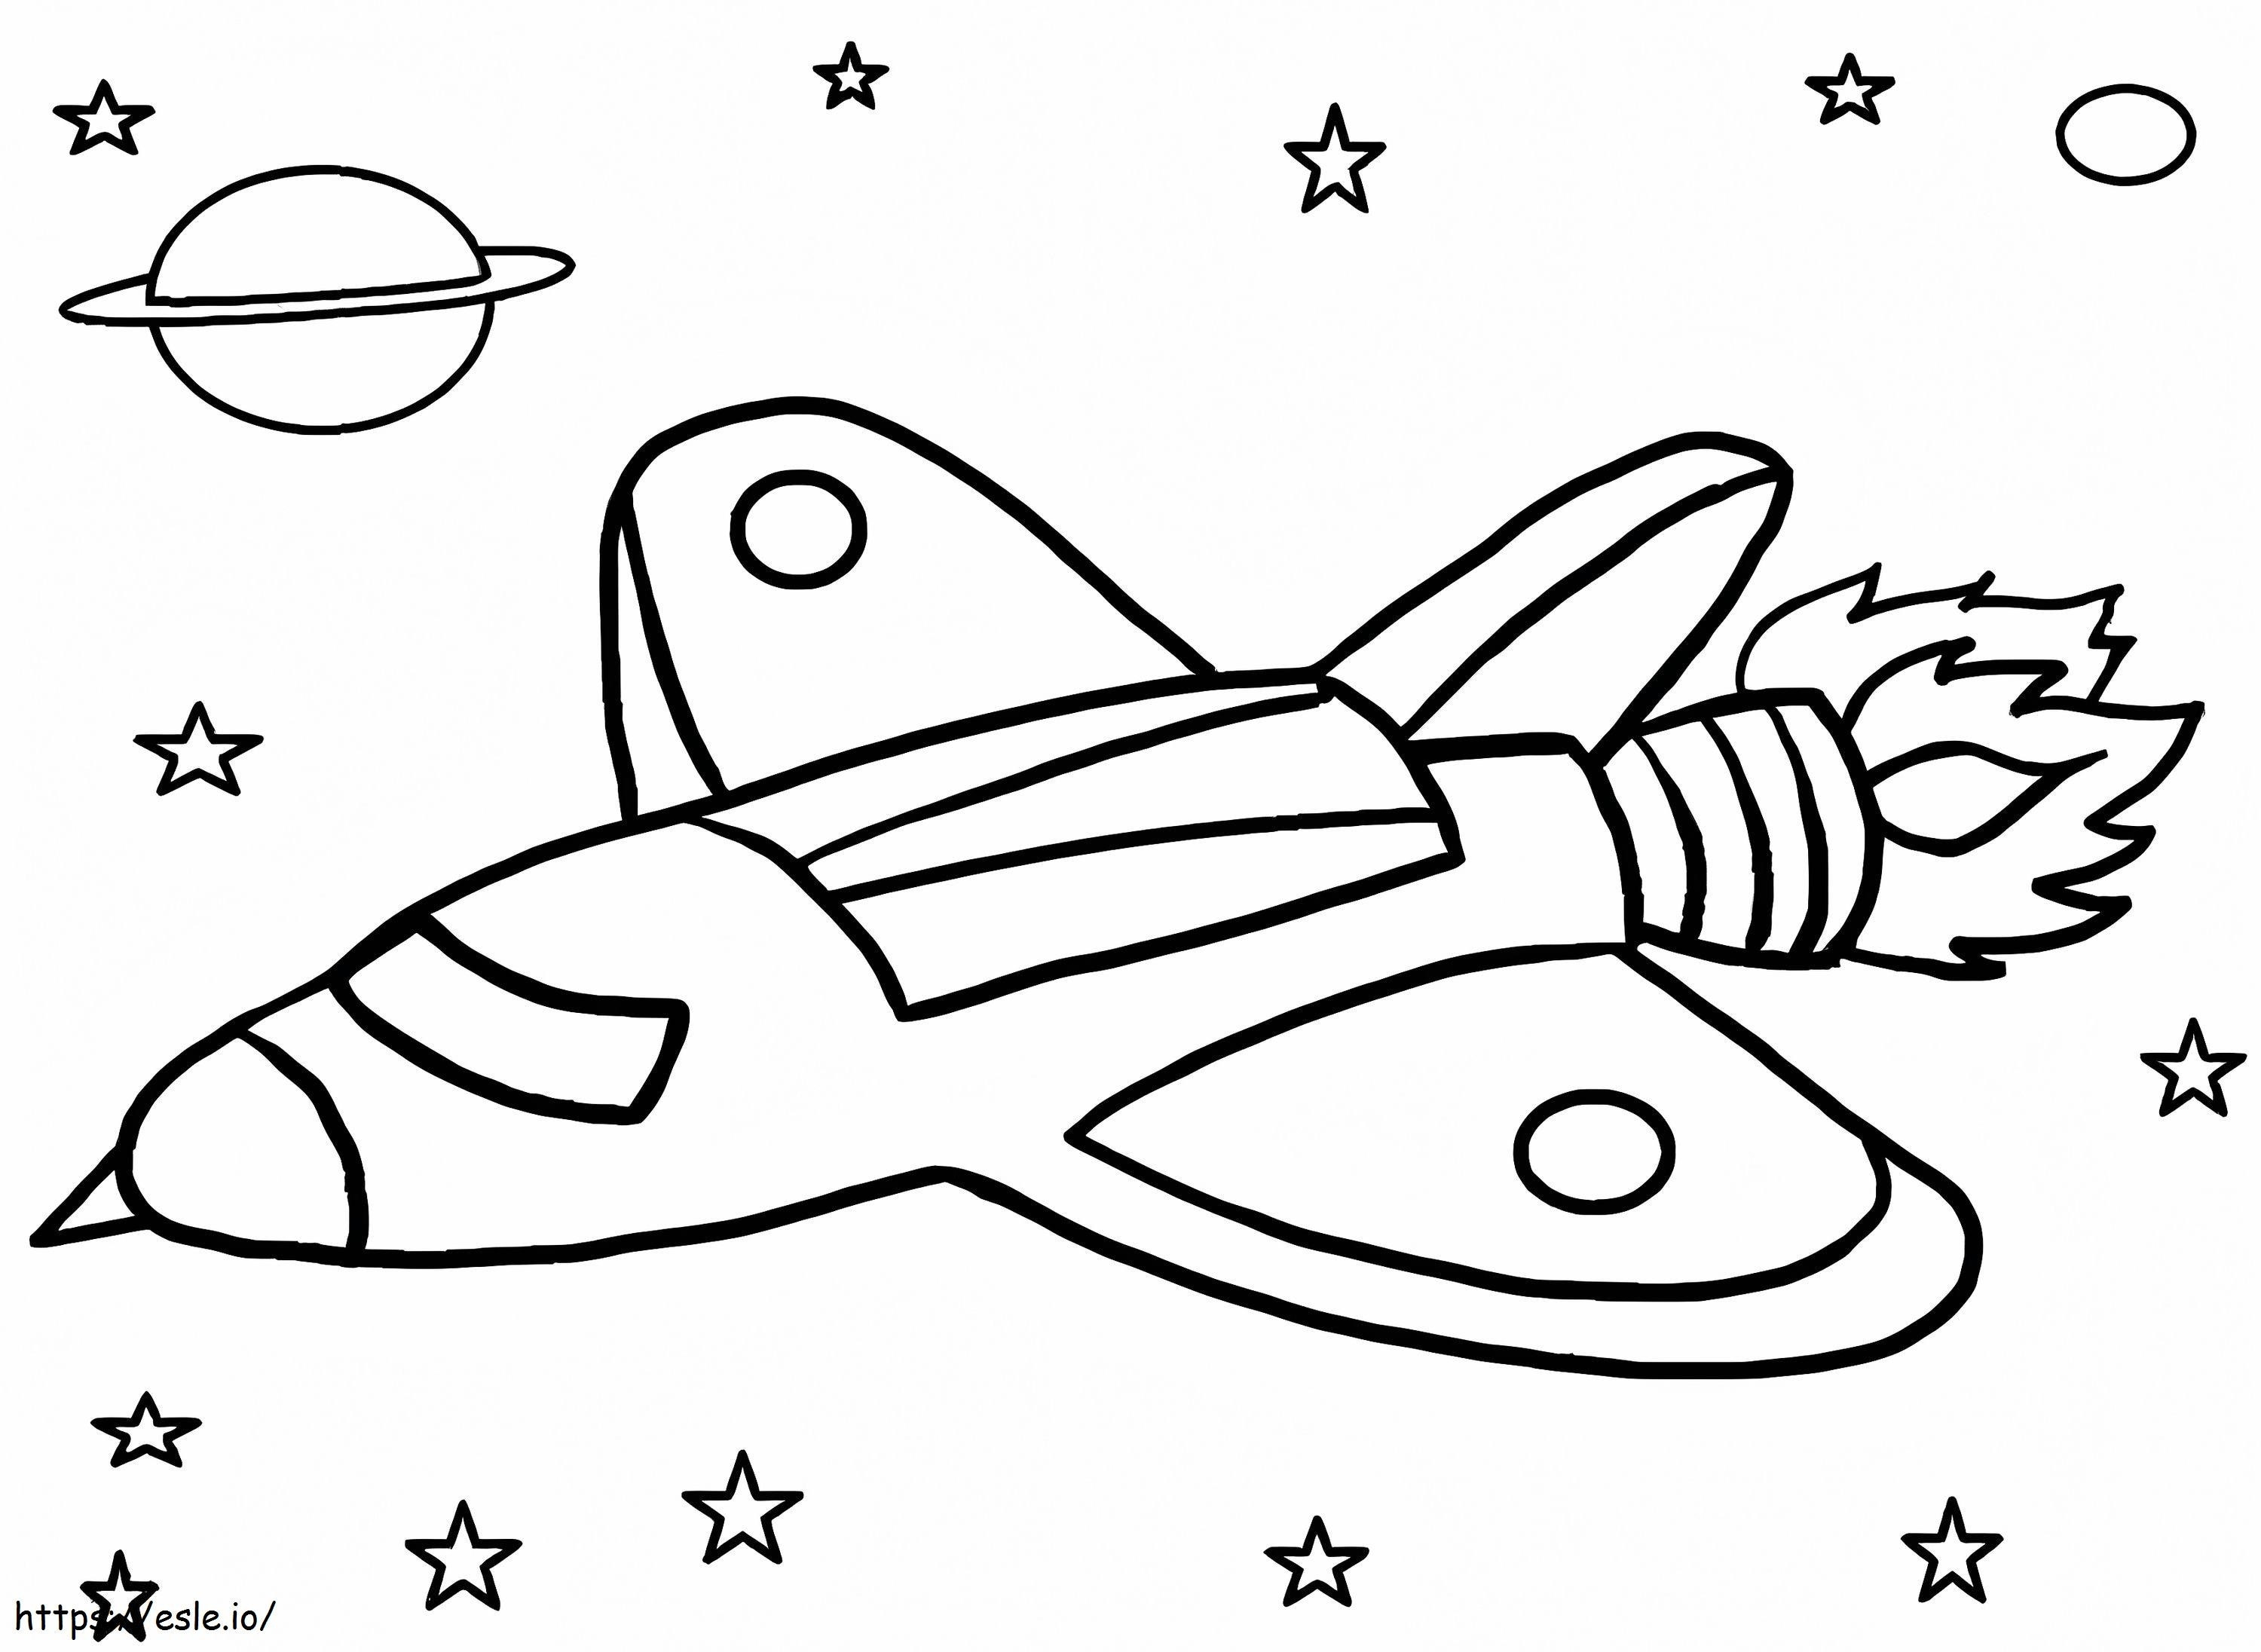 Nave espacial para niños para colorear